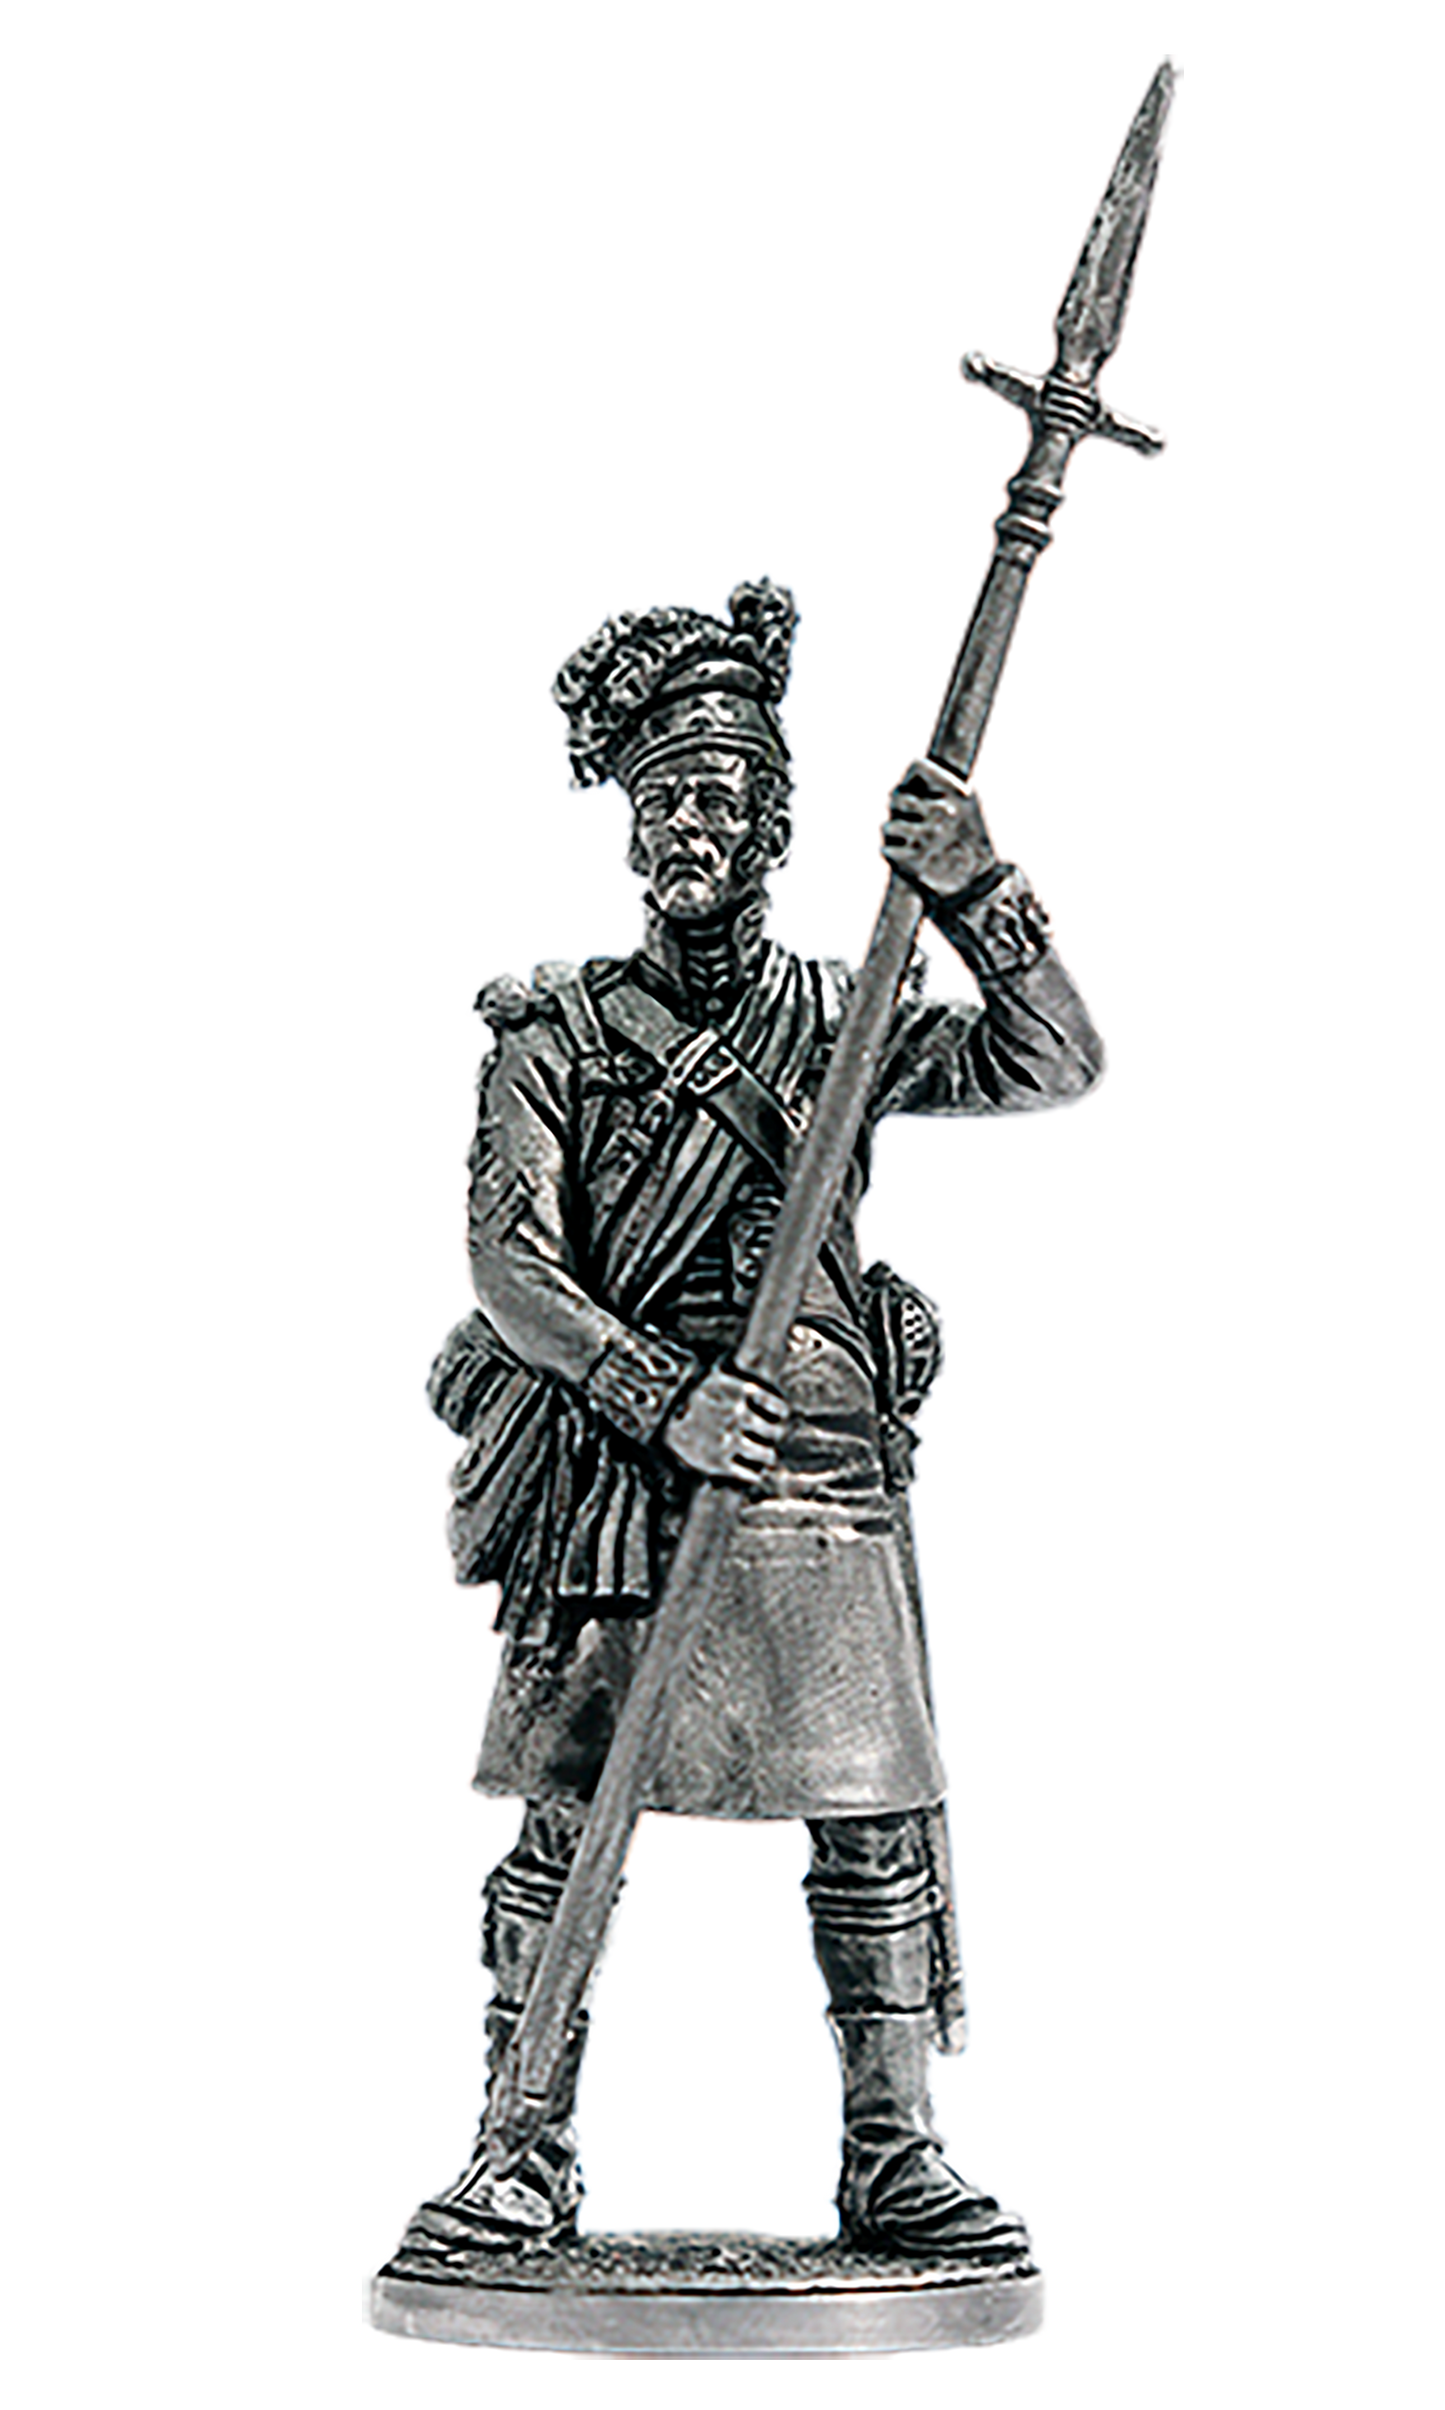 EK-NAP-95 - колор-сержант 42-го Королевского хайлэндского полка. Великобритания, 1806-15 гг.